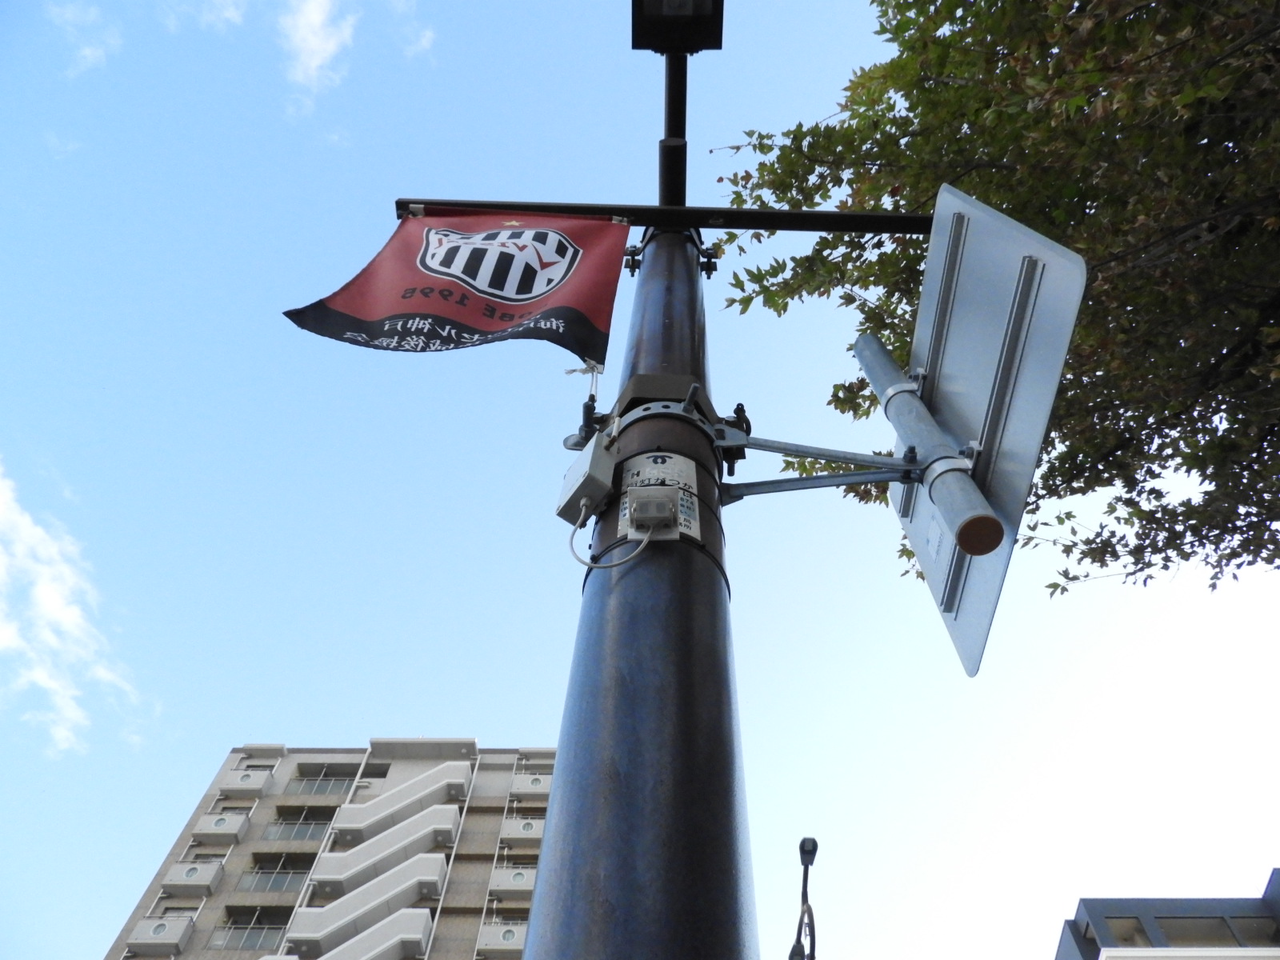 スタジアム周辺にある焦電センサーは神戸市の許可を得て設置されている